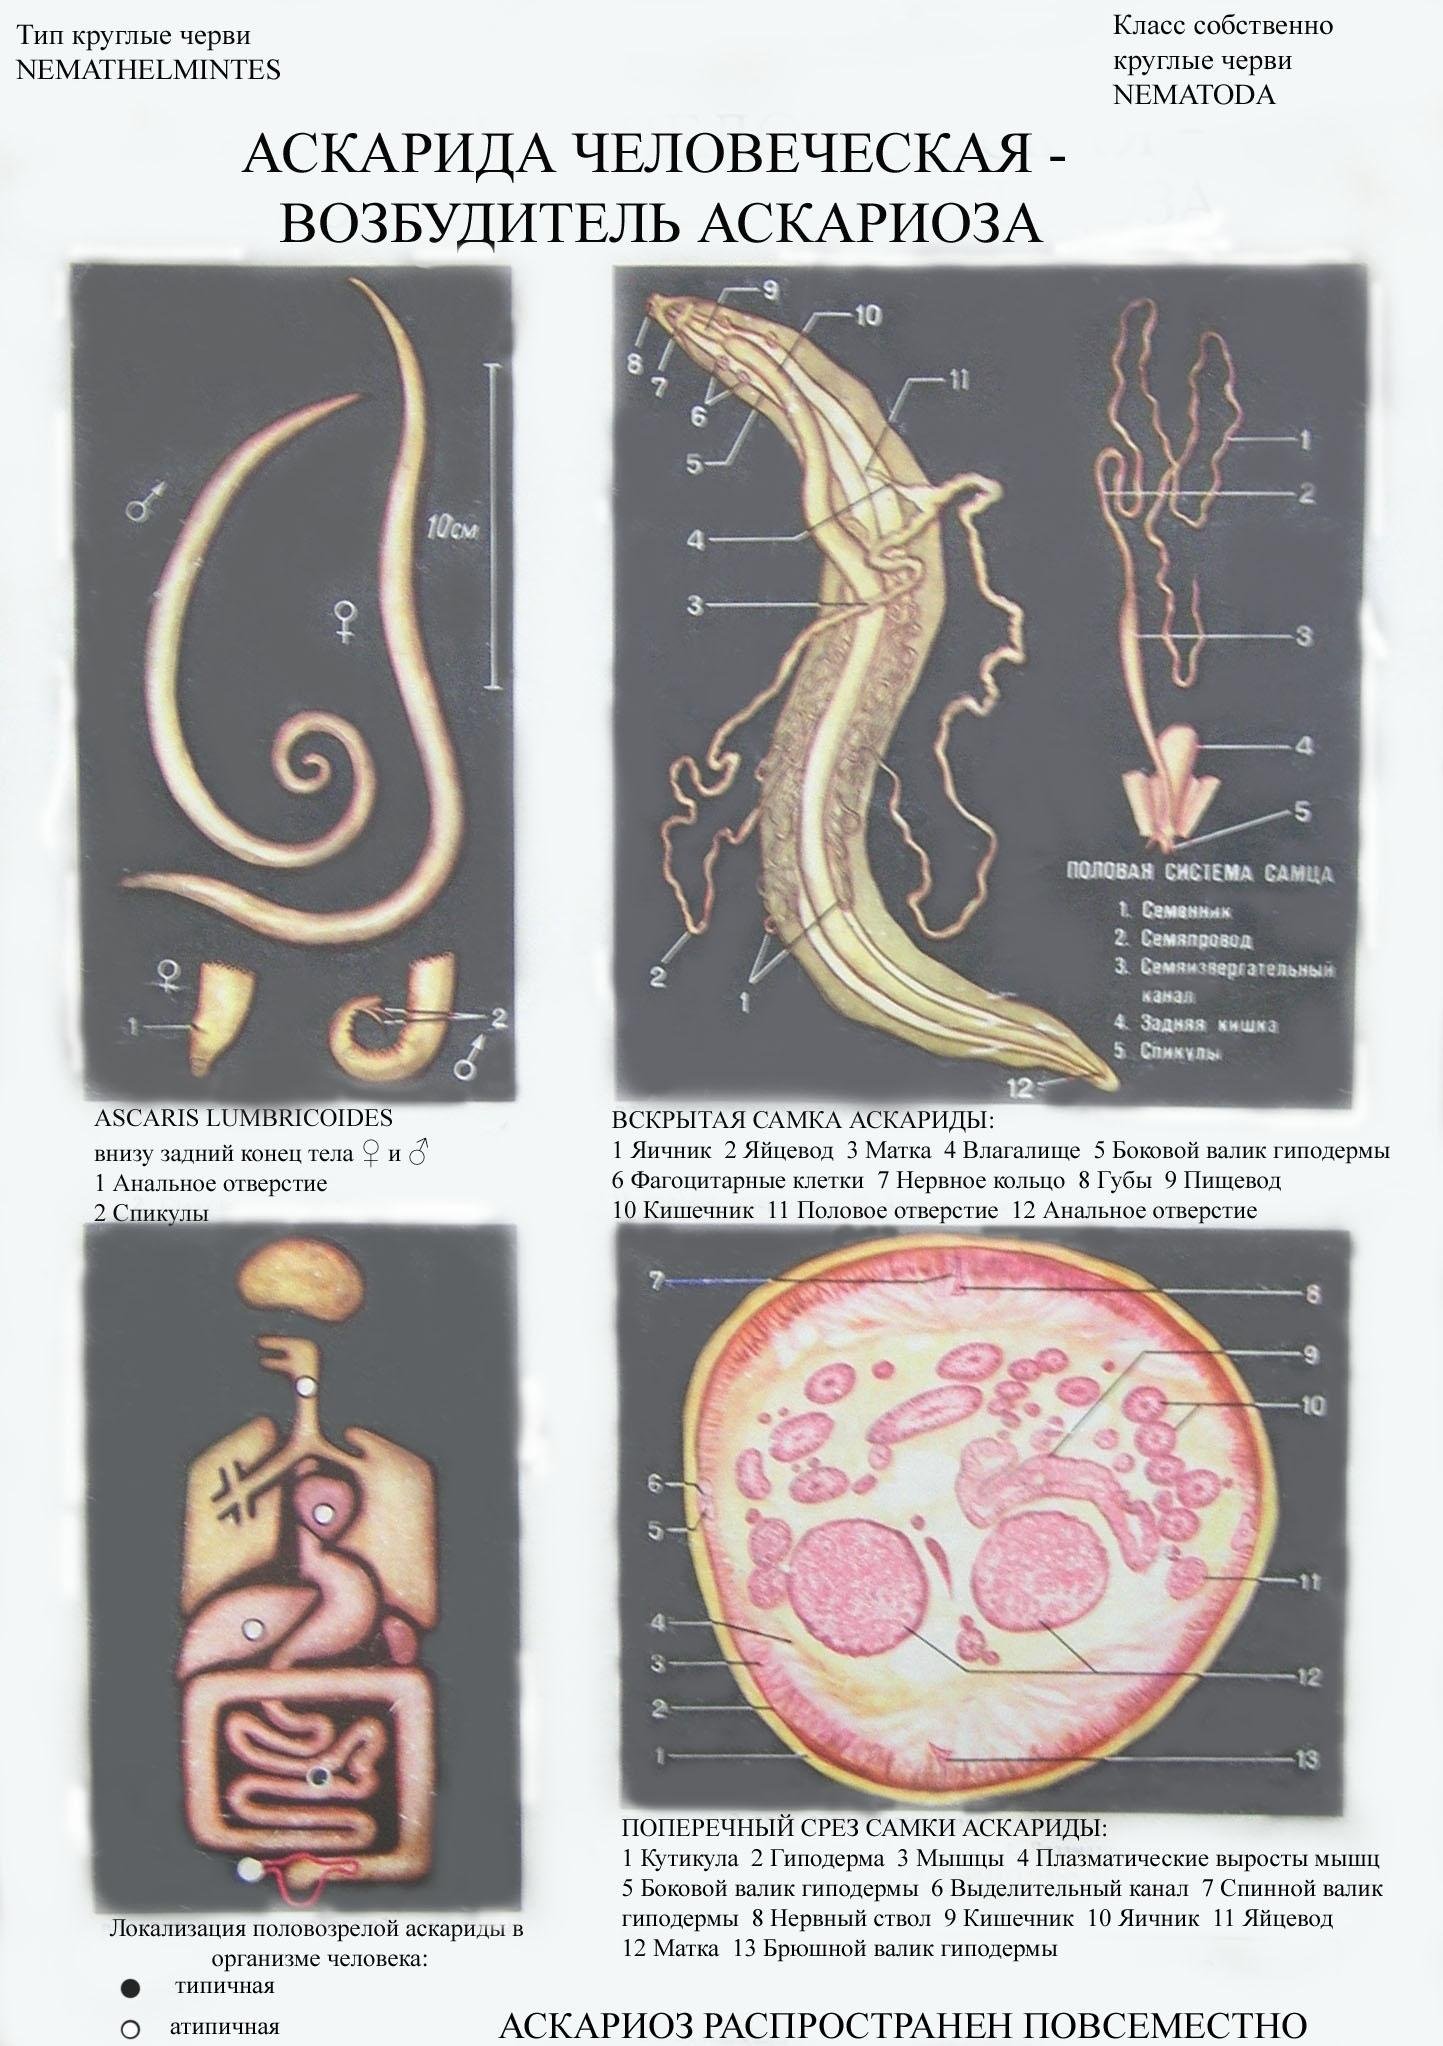 В каких органах личинки аскариды. Круглые черви аскарида человеческая. Тип круглые черви аскарида человеческая.